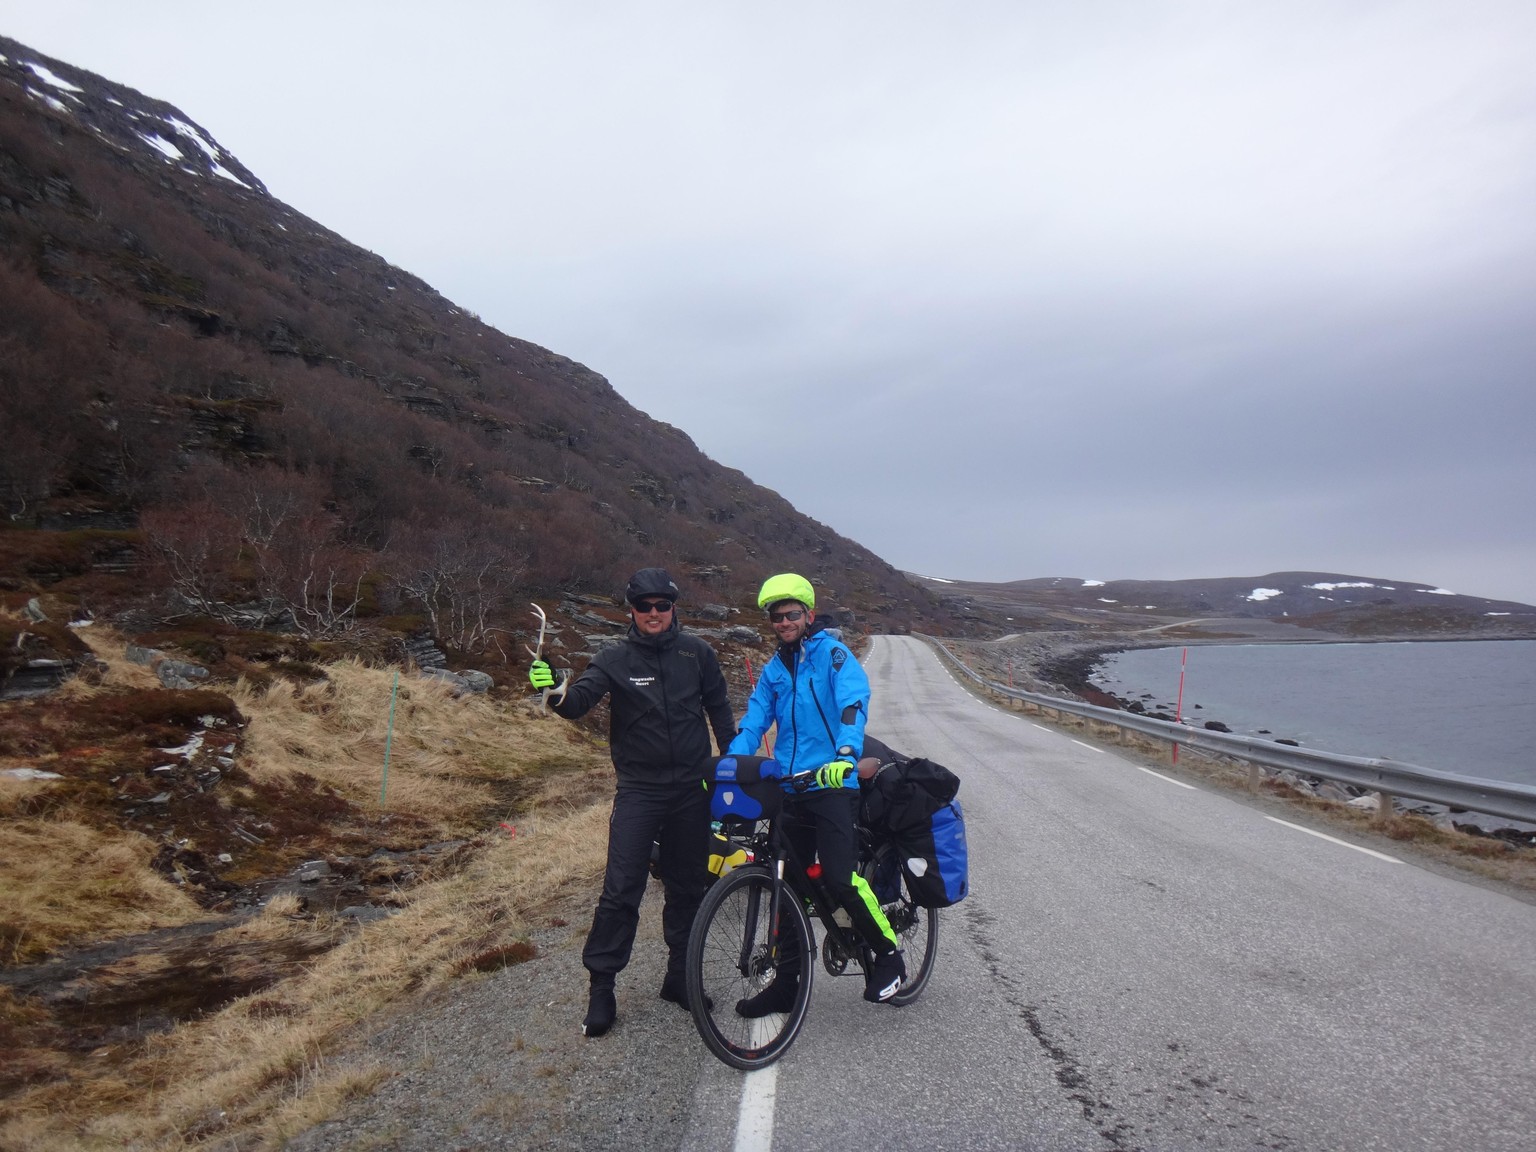 Bild 01
Norwegen, nördlich von Tromsø (20.05.2018):
Kaum sind wir am Nordkapp losgeradelt fand Fabian ein Rentiergeweih am Strassenrand, welches er
bis in den 16’000km entfernten Senegal mitschleppte. ...